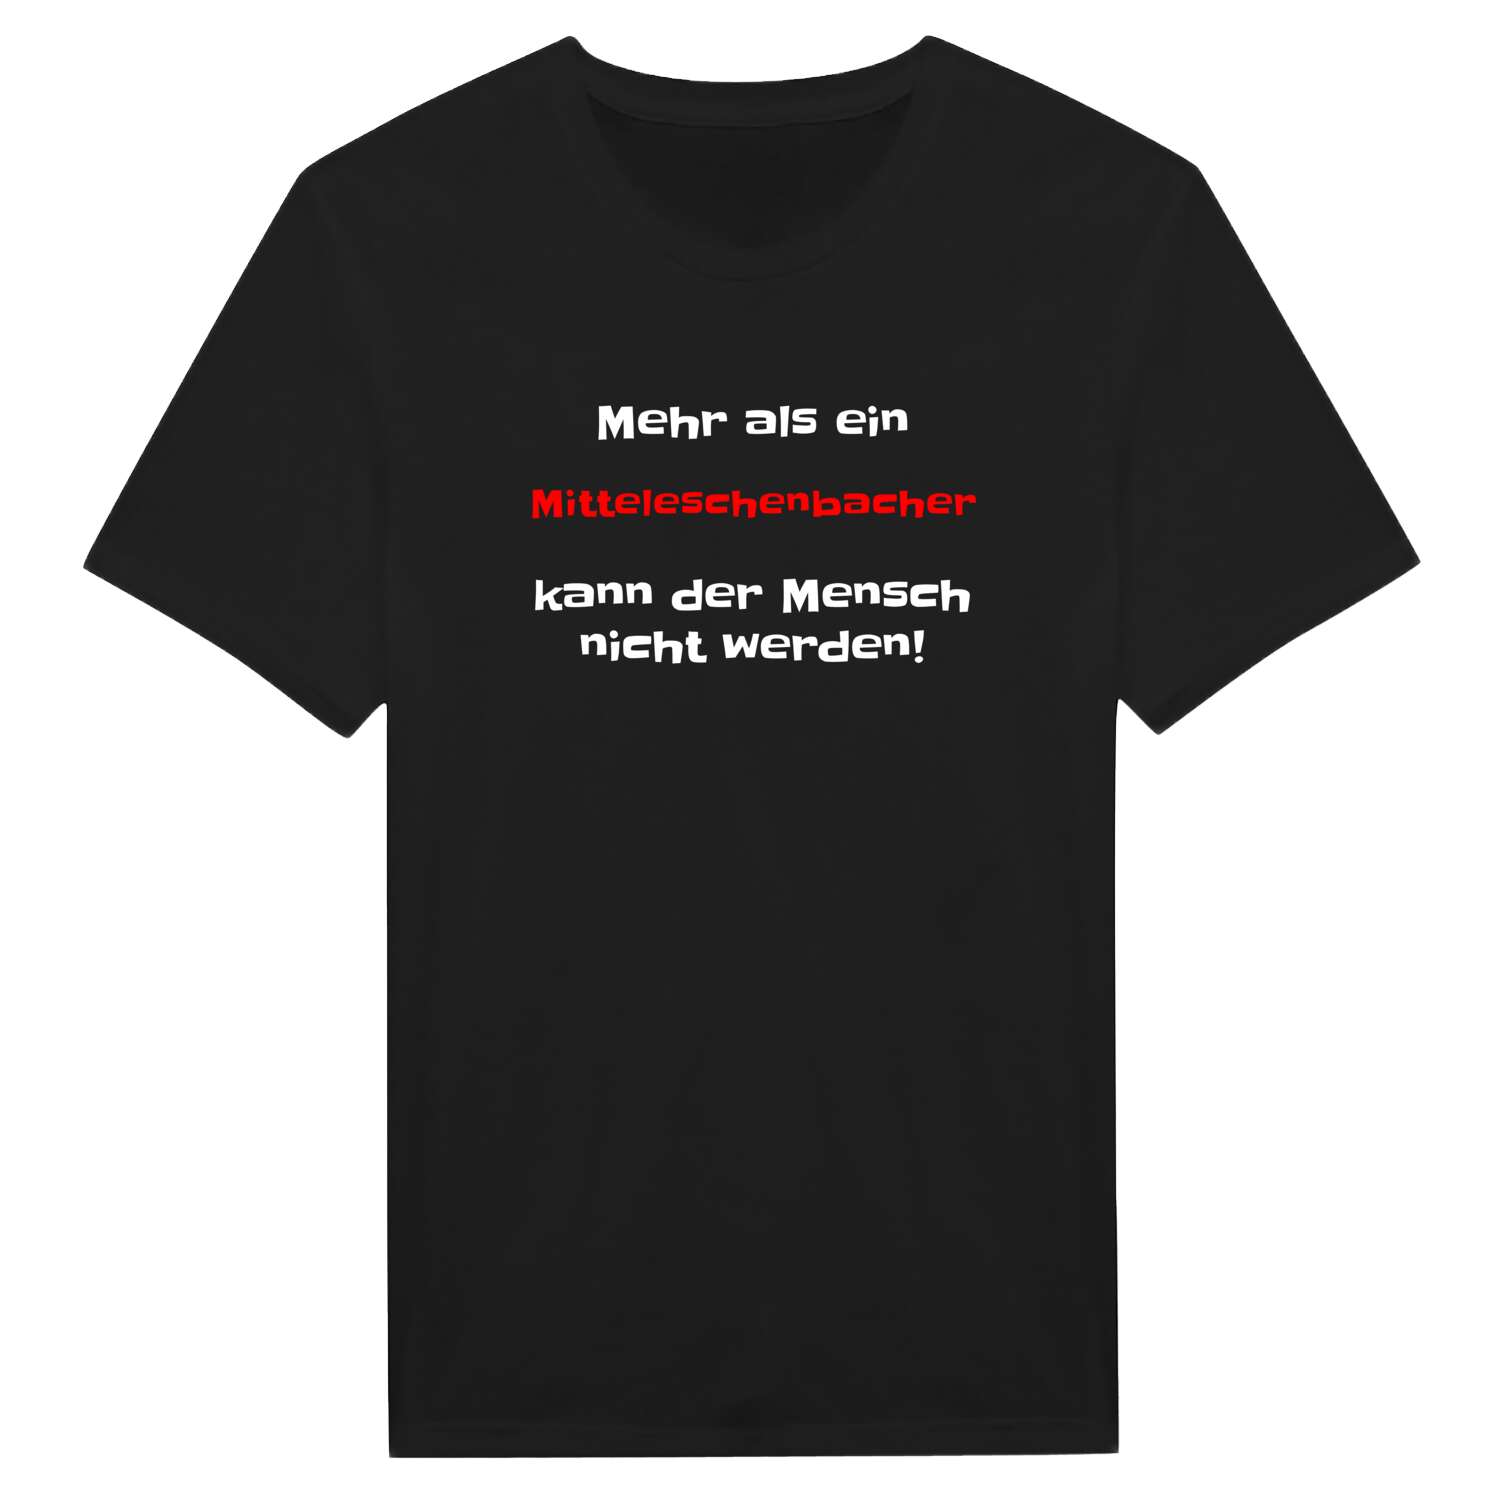 Mitteleschenbach T-Shirt »Mehr als ein«